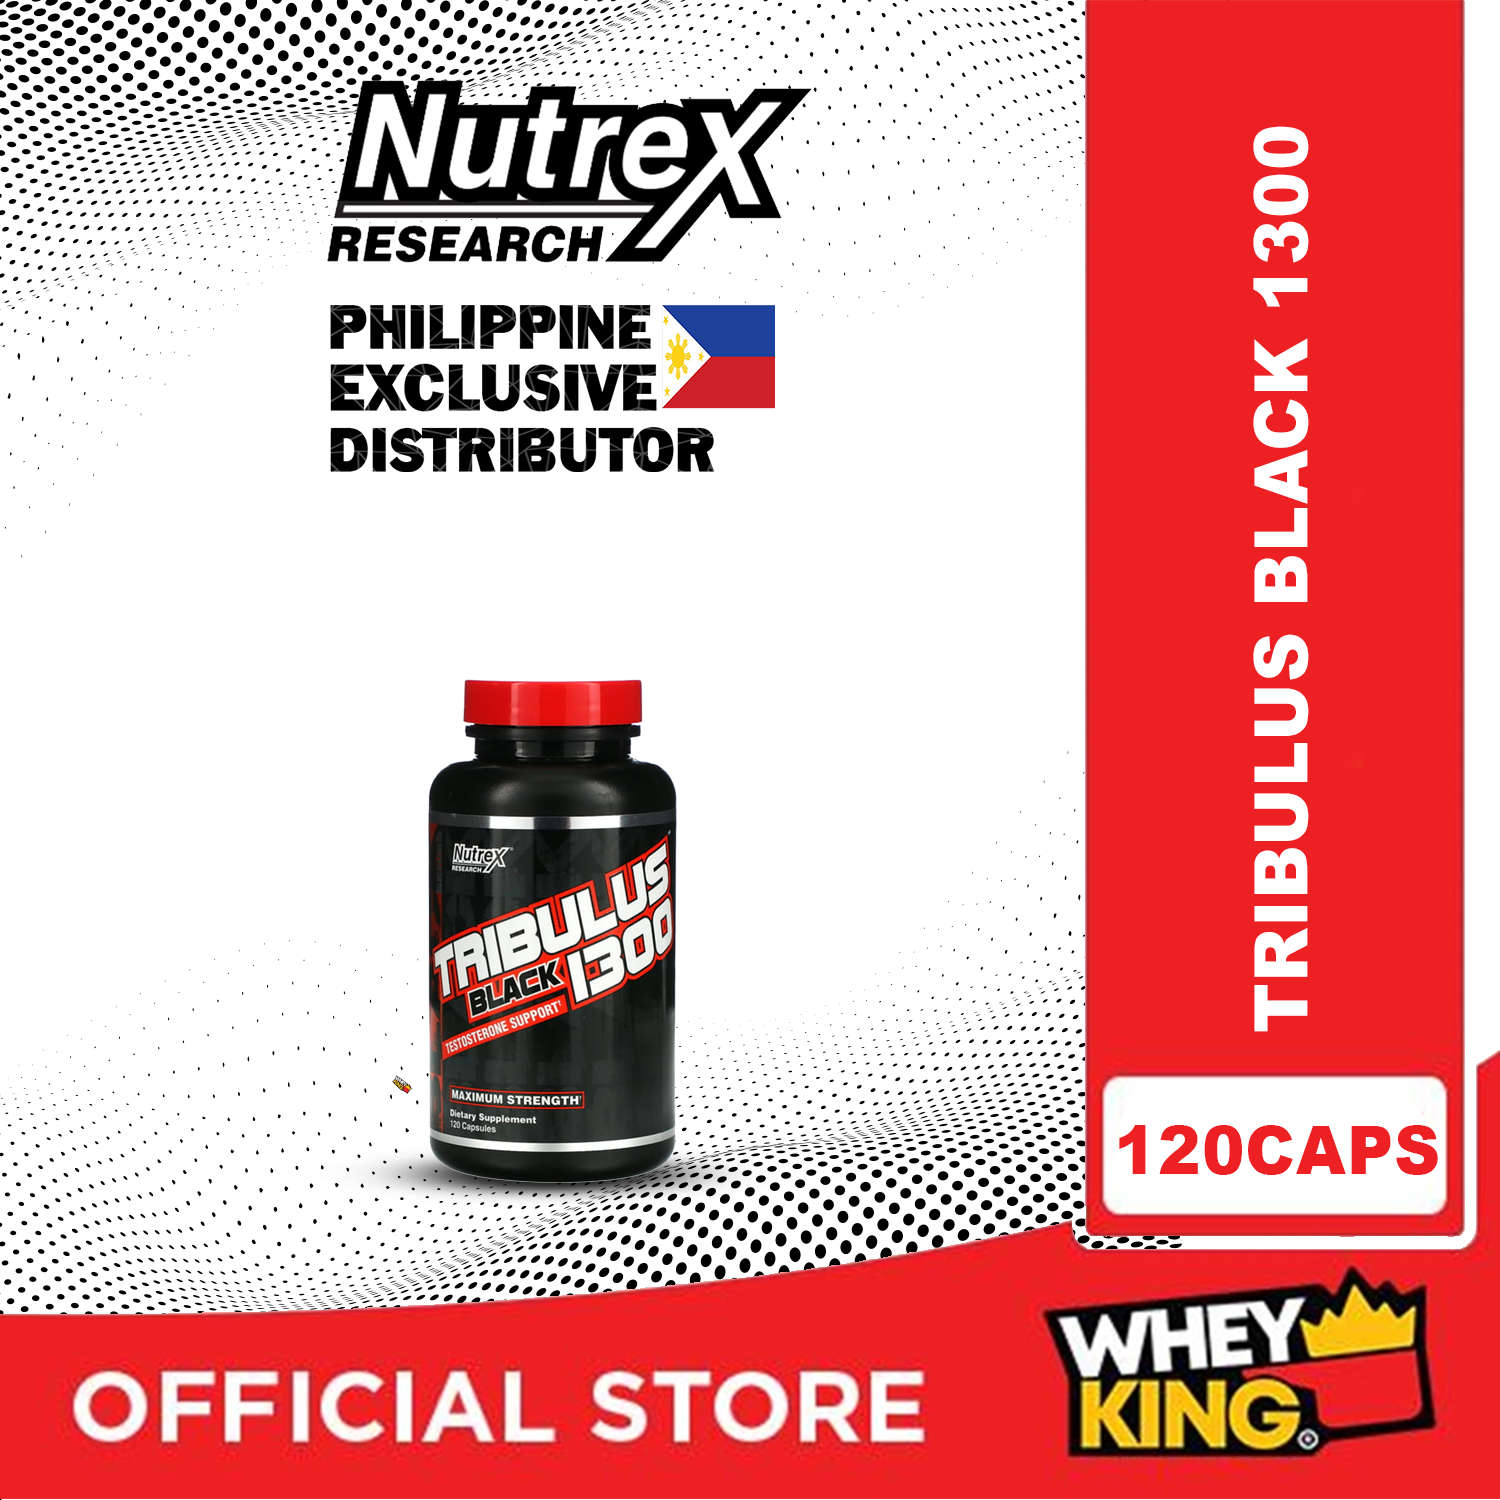 Nutrex Tribulus Black 1300 - 120 Capsules